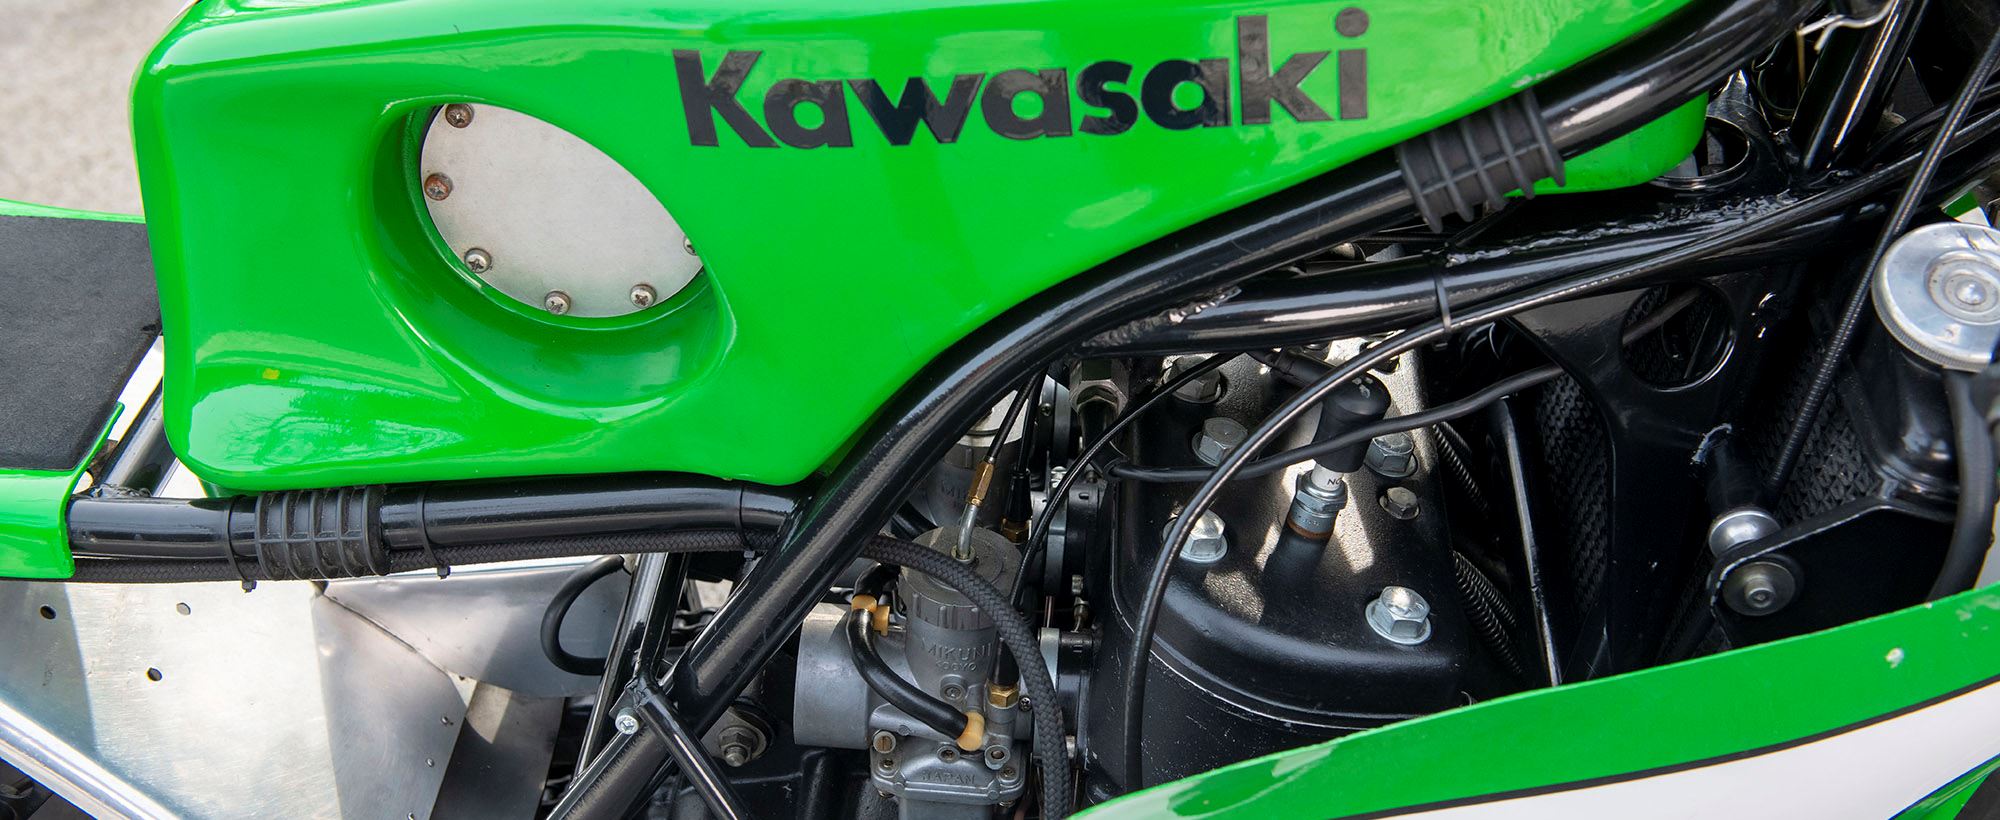 Kawasaki 750 024.jpg